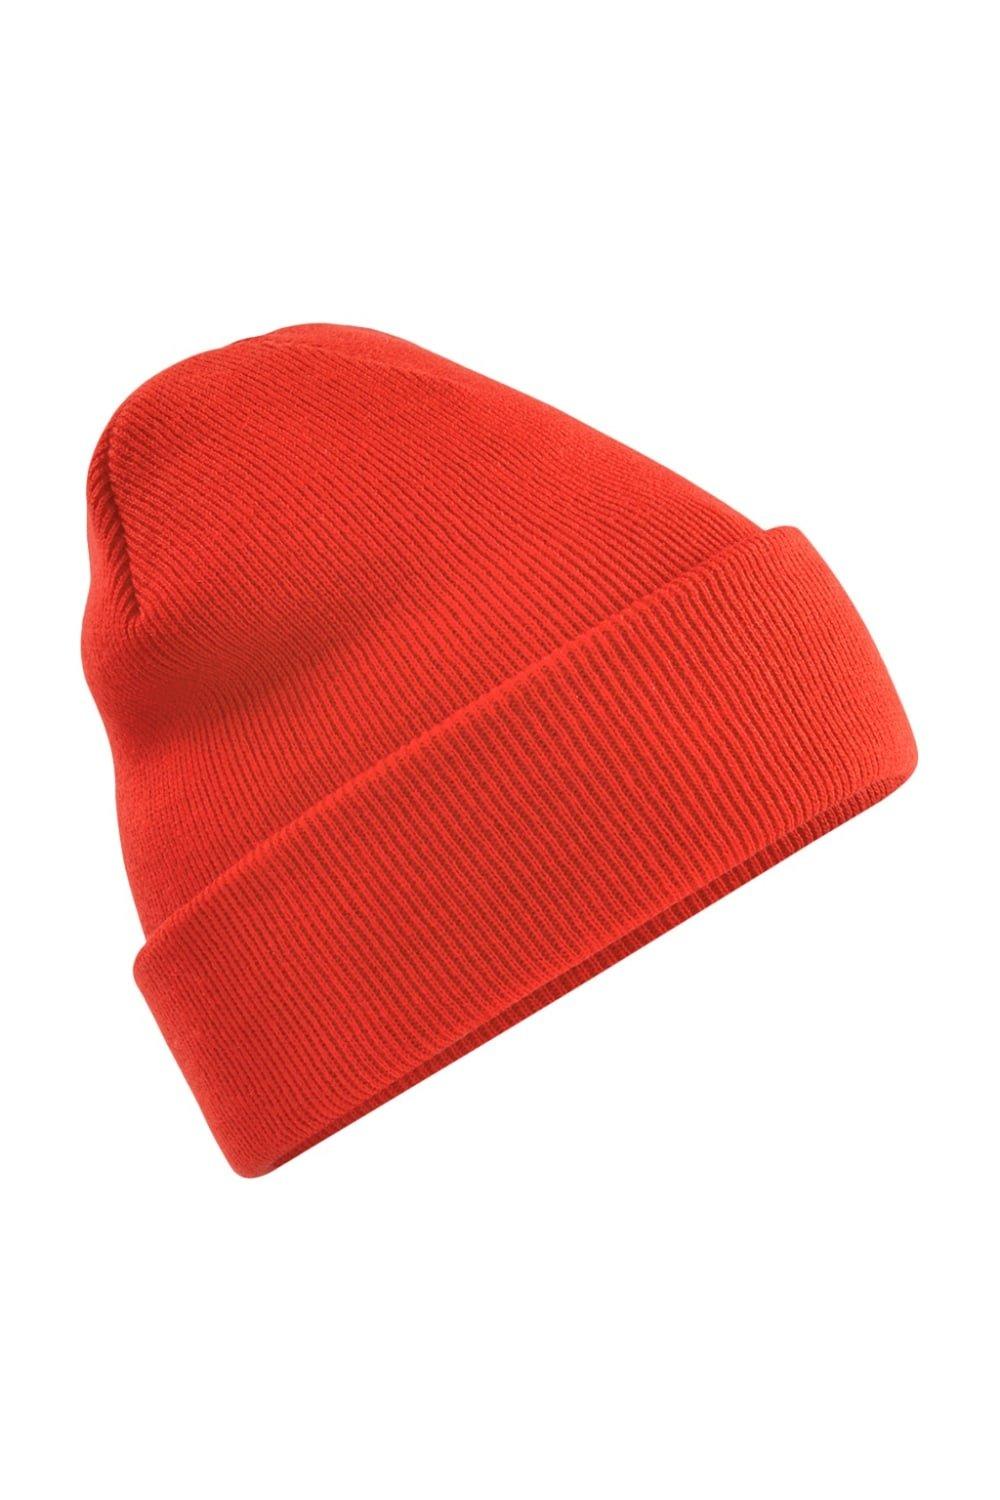 Оригинальная зимняя шапка-бини с манжетами Beechfield, красный шапка ушанка зимняя р58 цв лес трикотаж мембрана ут и мех